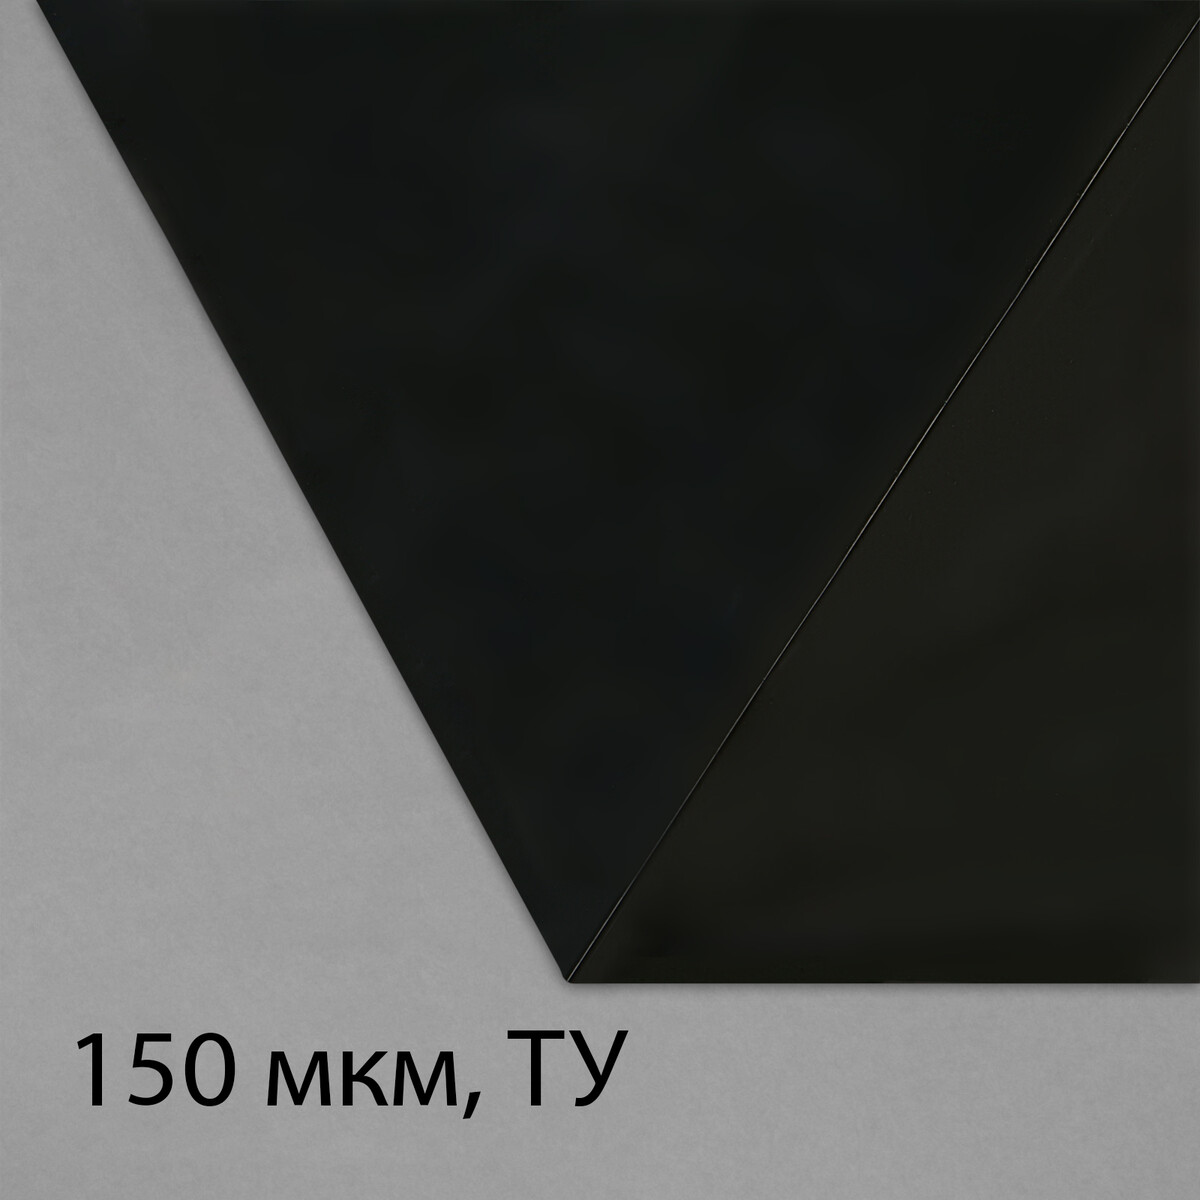 Пленка из полиэтилена, техническая, толщина 150 мкм, черная, 5 × 3 м, рукав (1.5 м × 2), эконом 50%, для дома и сада пленка полиэтиленовая толщина 120 мкм прозрачная 5 × 3 м рукав 1 5 м × 2 гост 10354 82